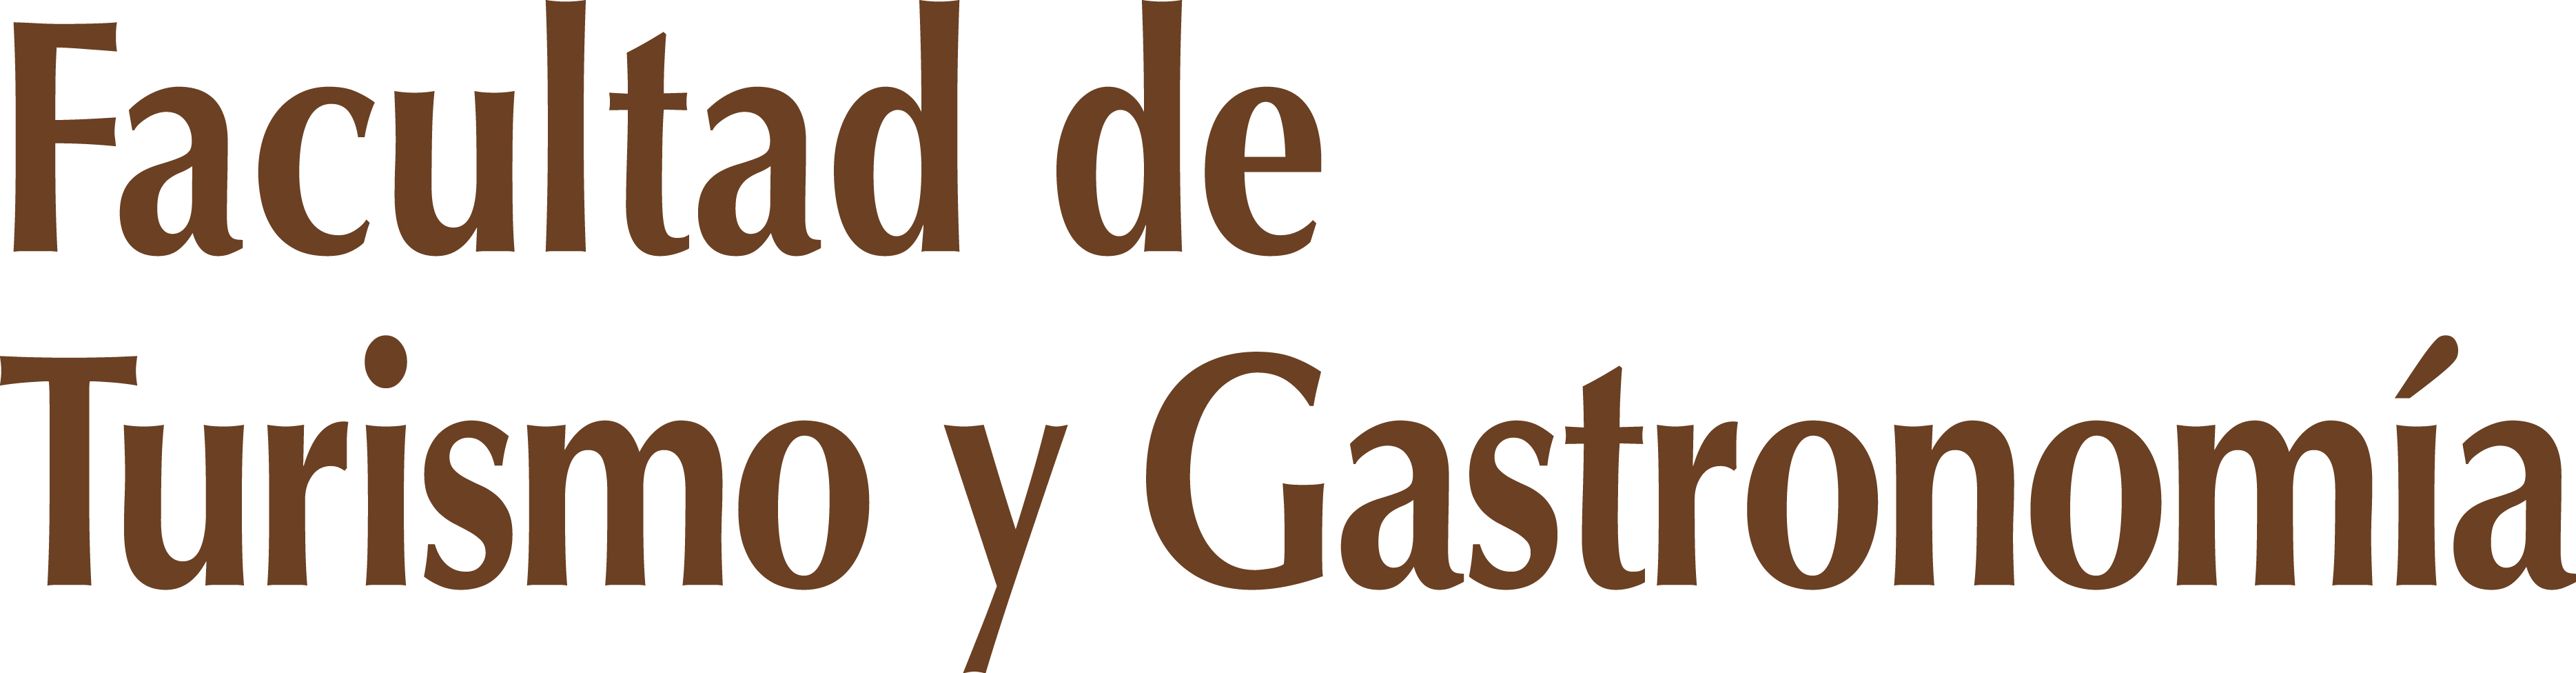 Logo Facultad de Turismo y Gastronomía